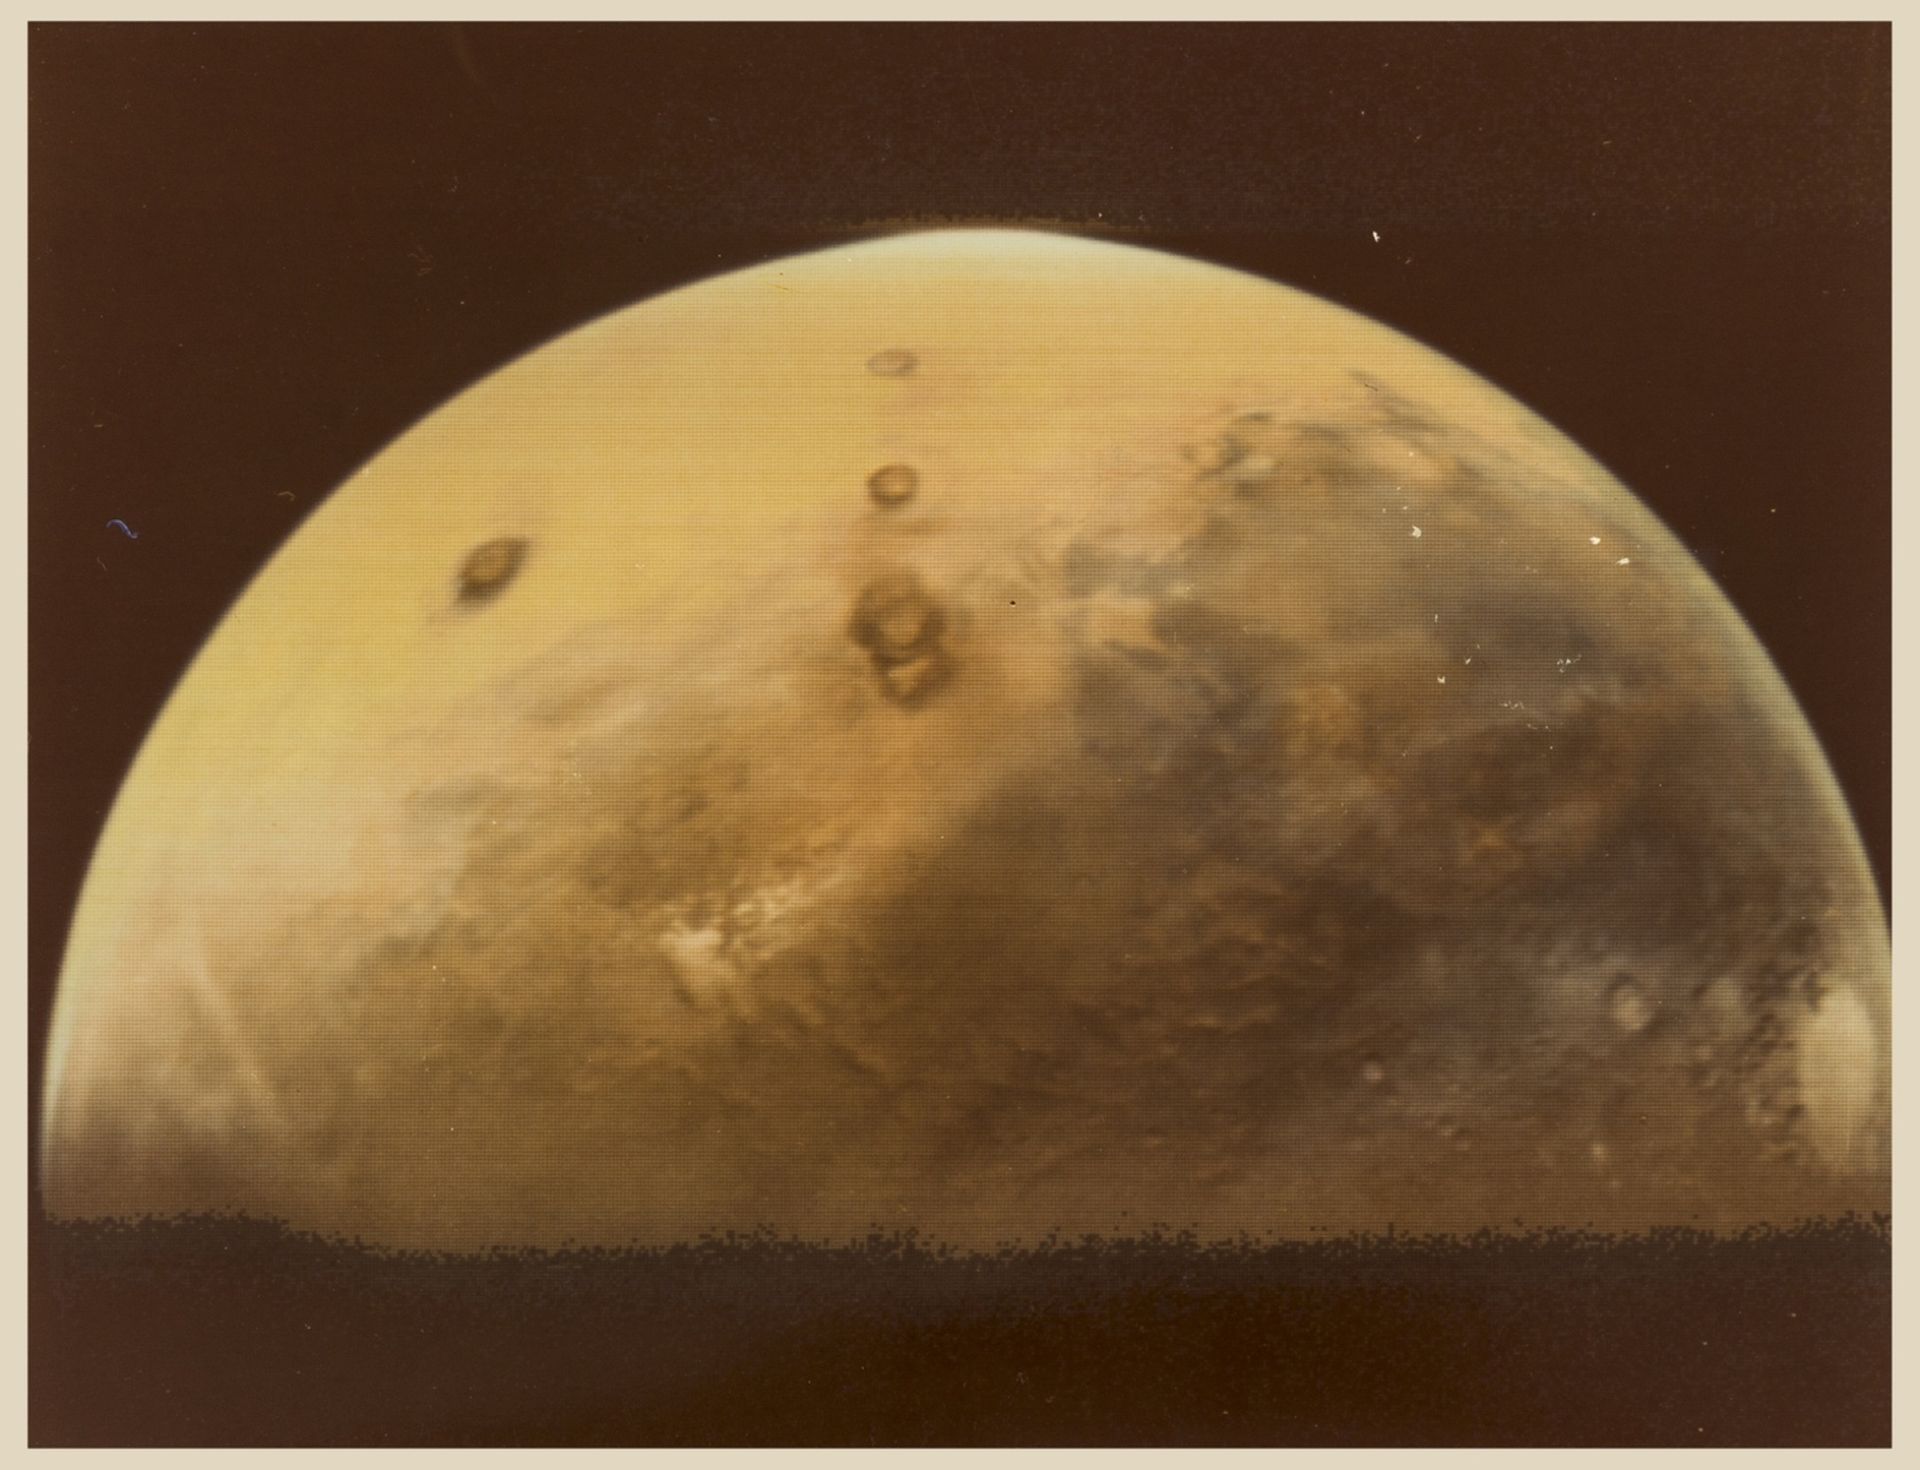 Martian Hemisphere, vintage chromogenic print, 1976.